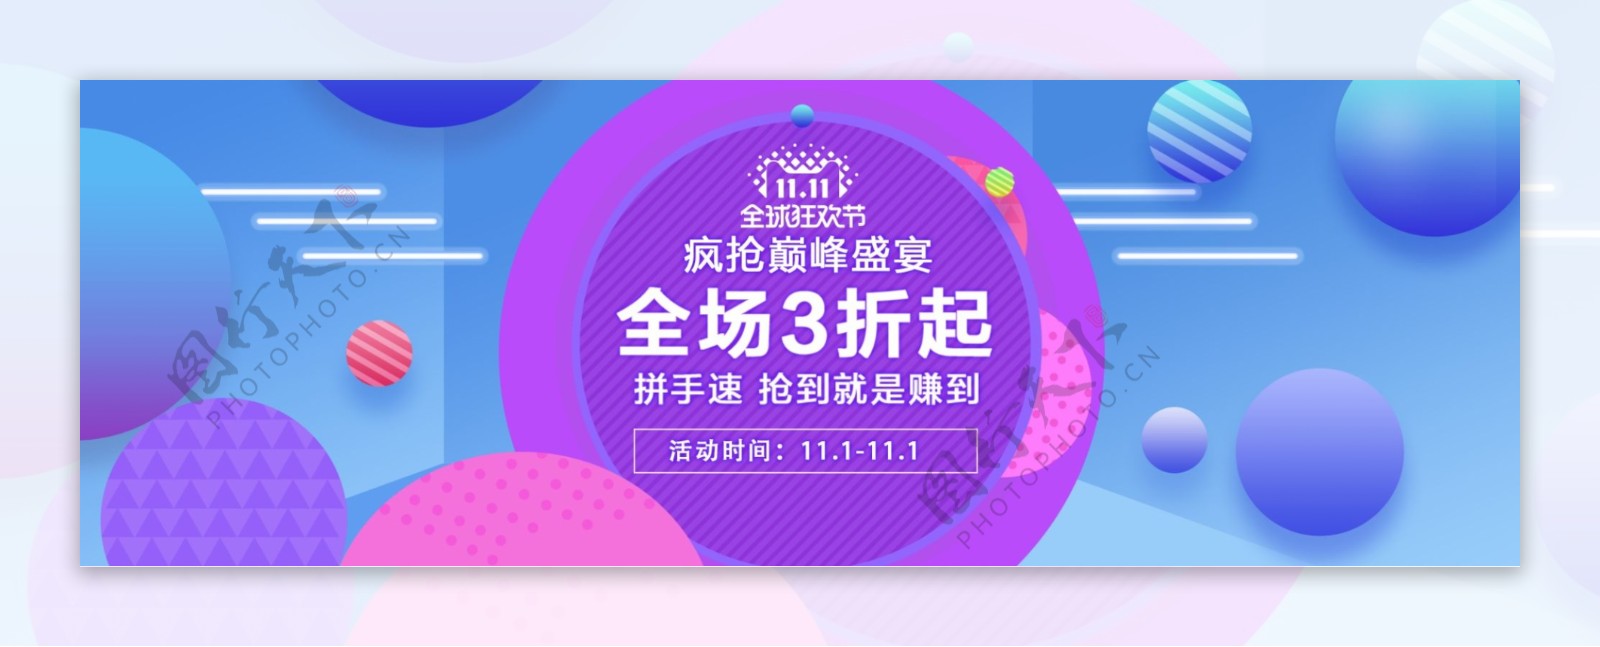 炫彩简约双11促销盛宴电商海报banner淘宝双十一